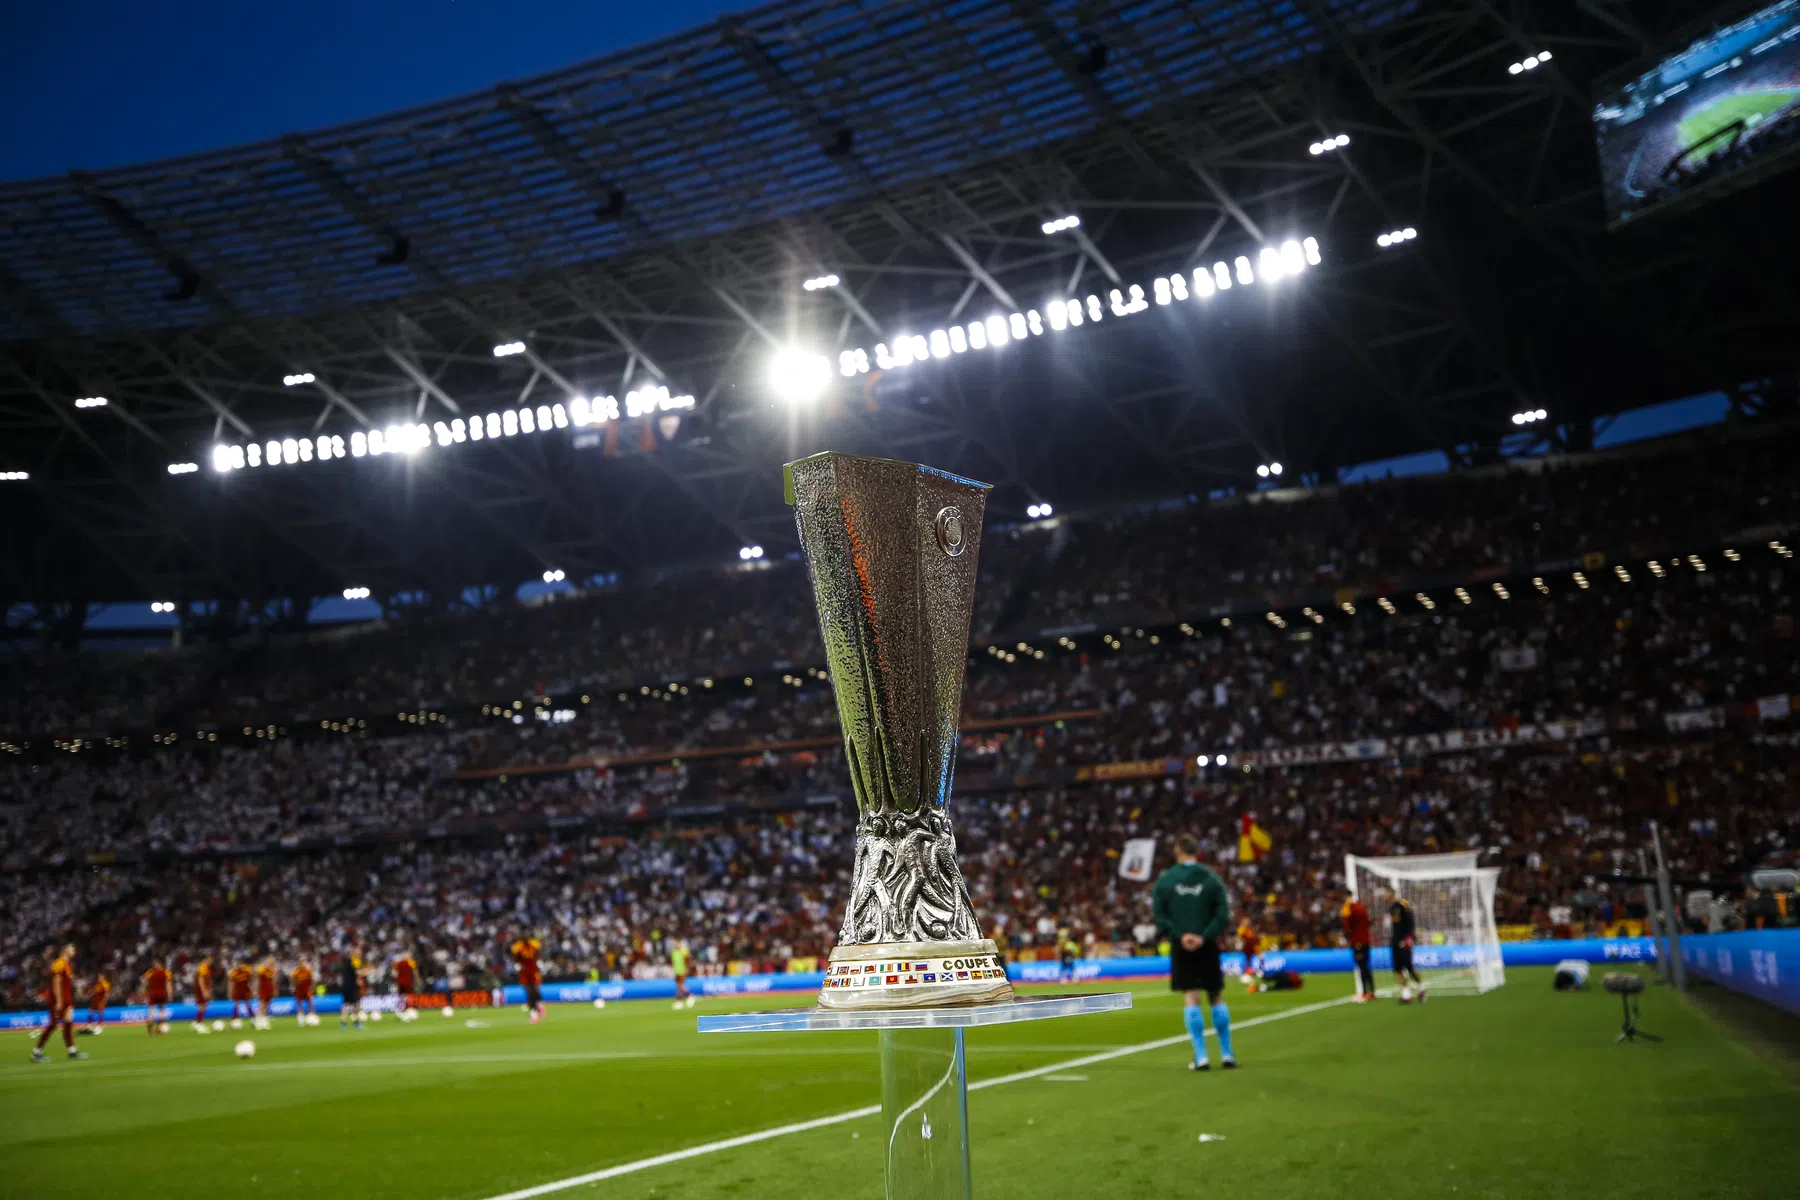 Wat is het speelschema van de tussenronde europa league?